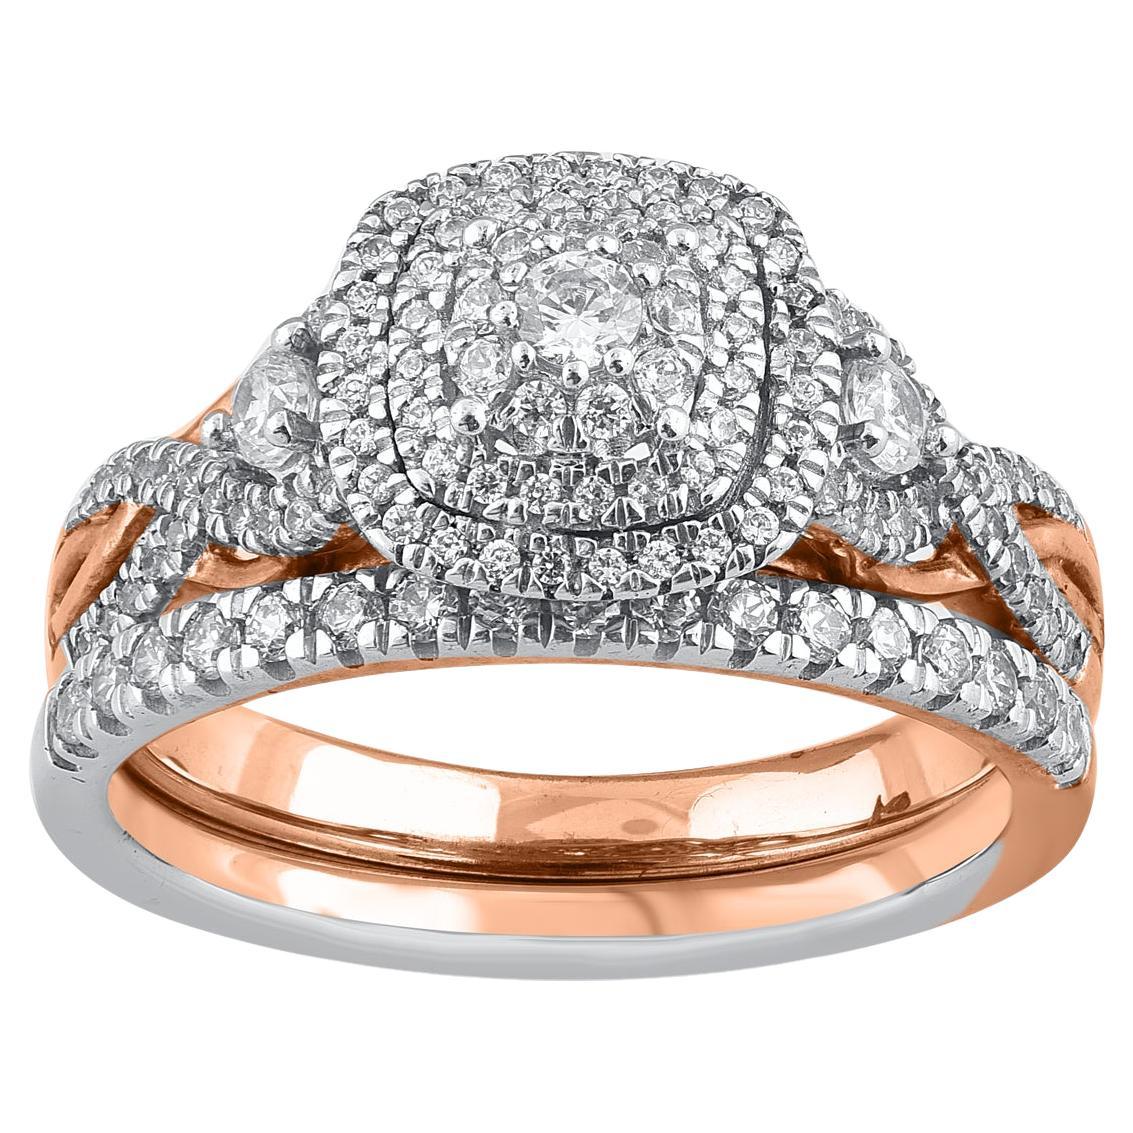 TJD 0.75 Carat Natural Round Cut Diamond 14 Karat Rose Gold Bridal Ring Set